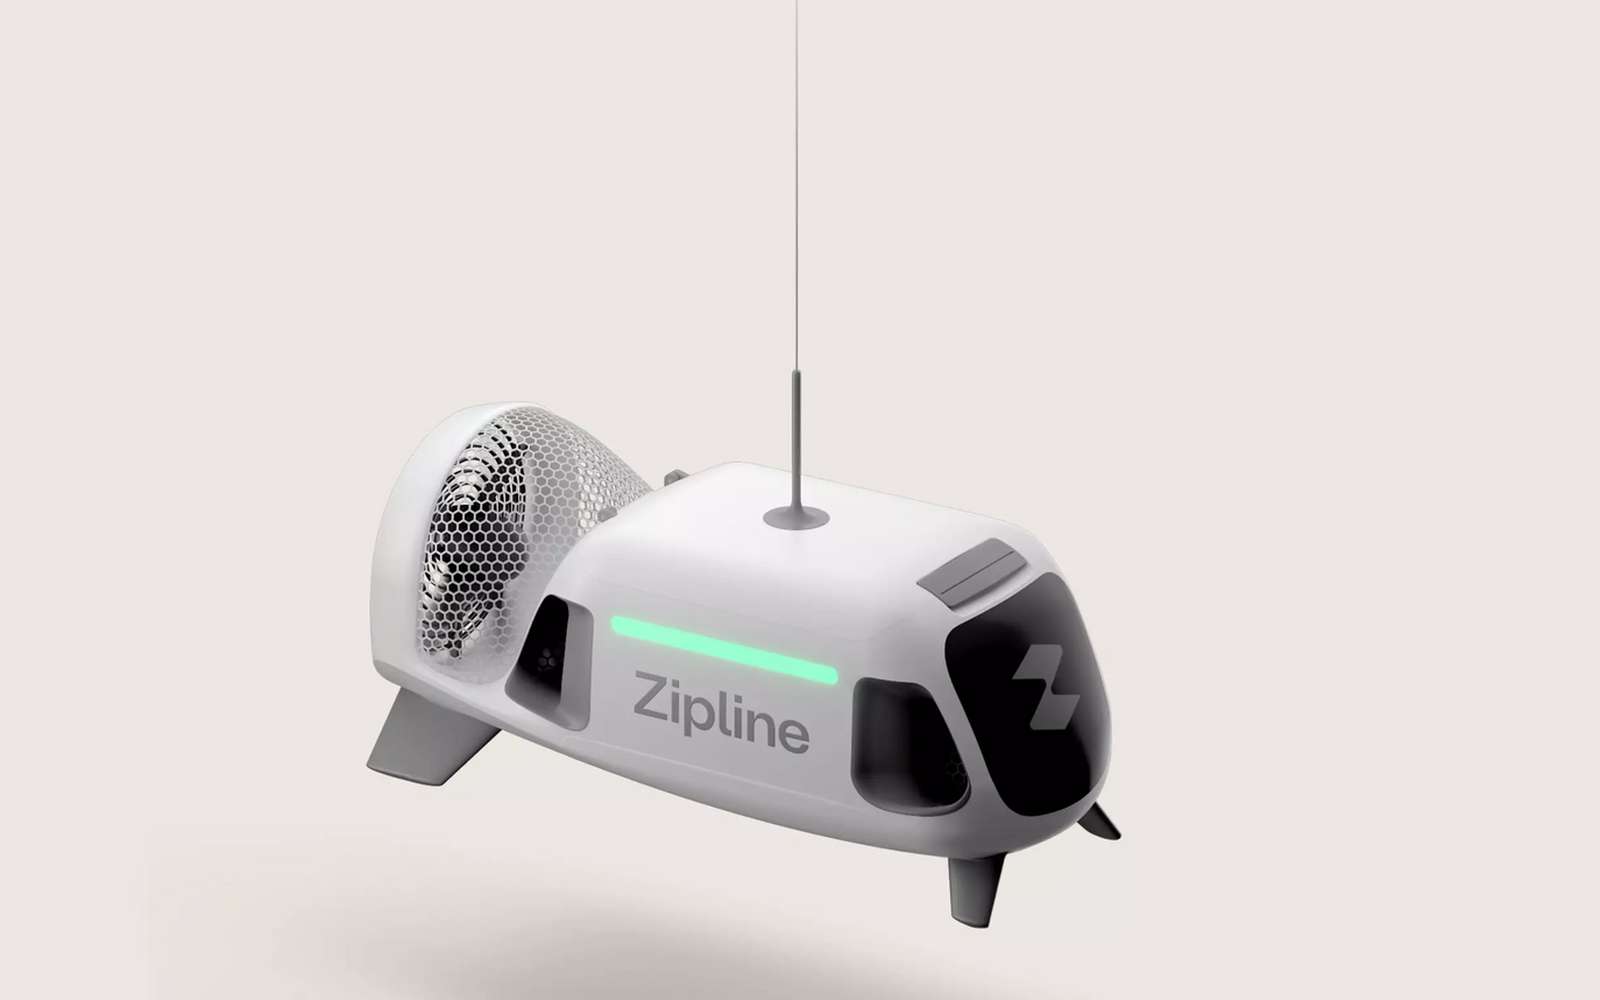 Zipline dévoile un étrange drone de livraison autonome